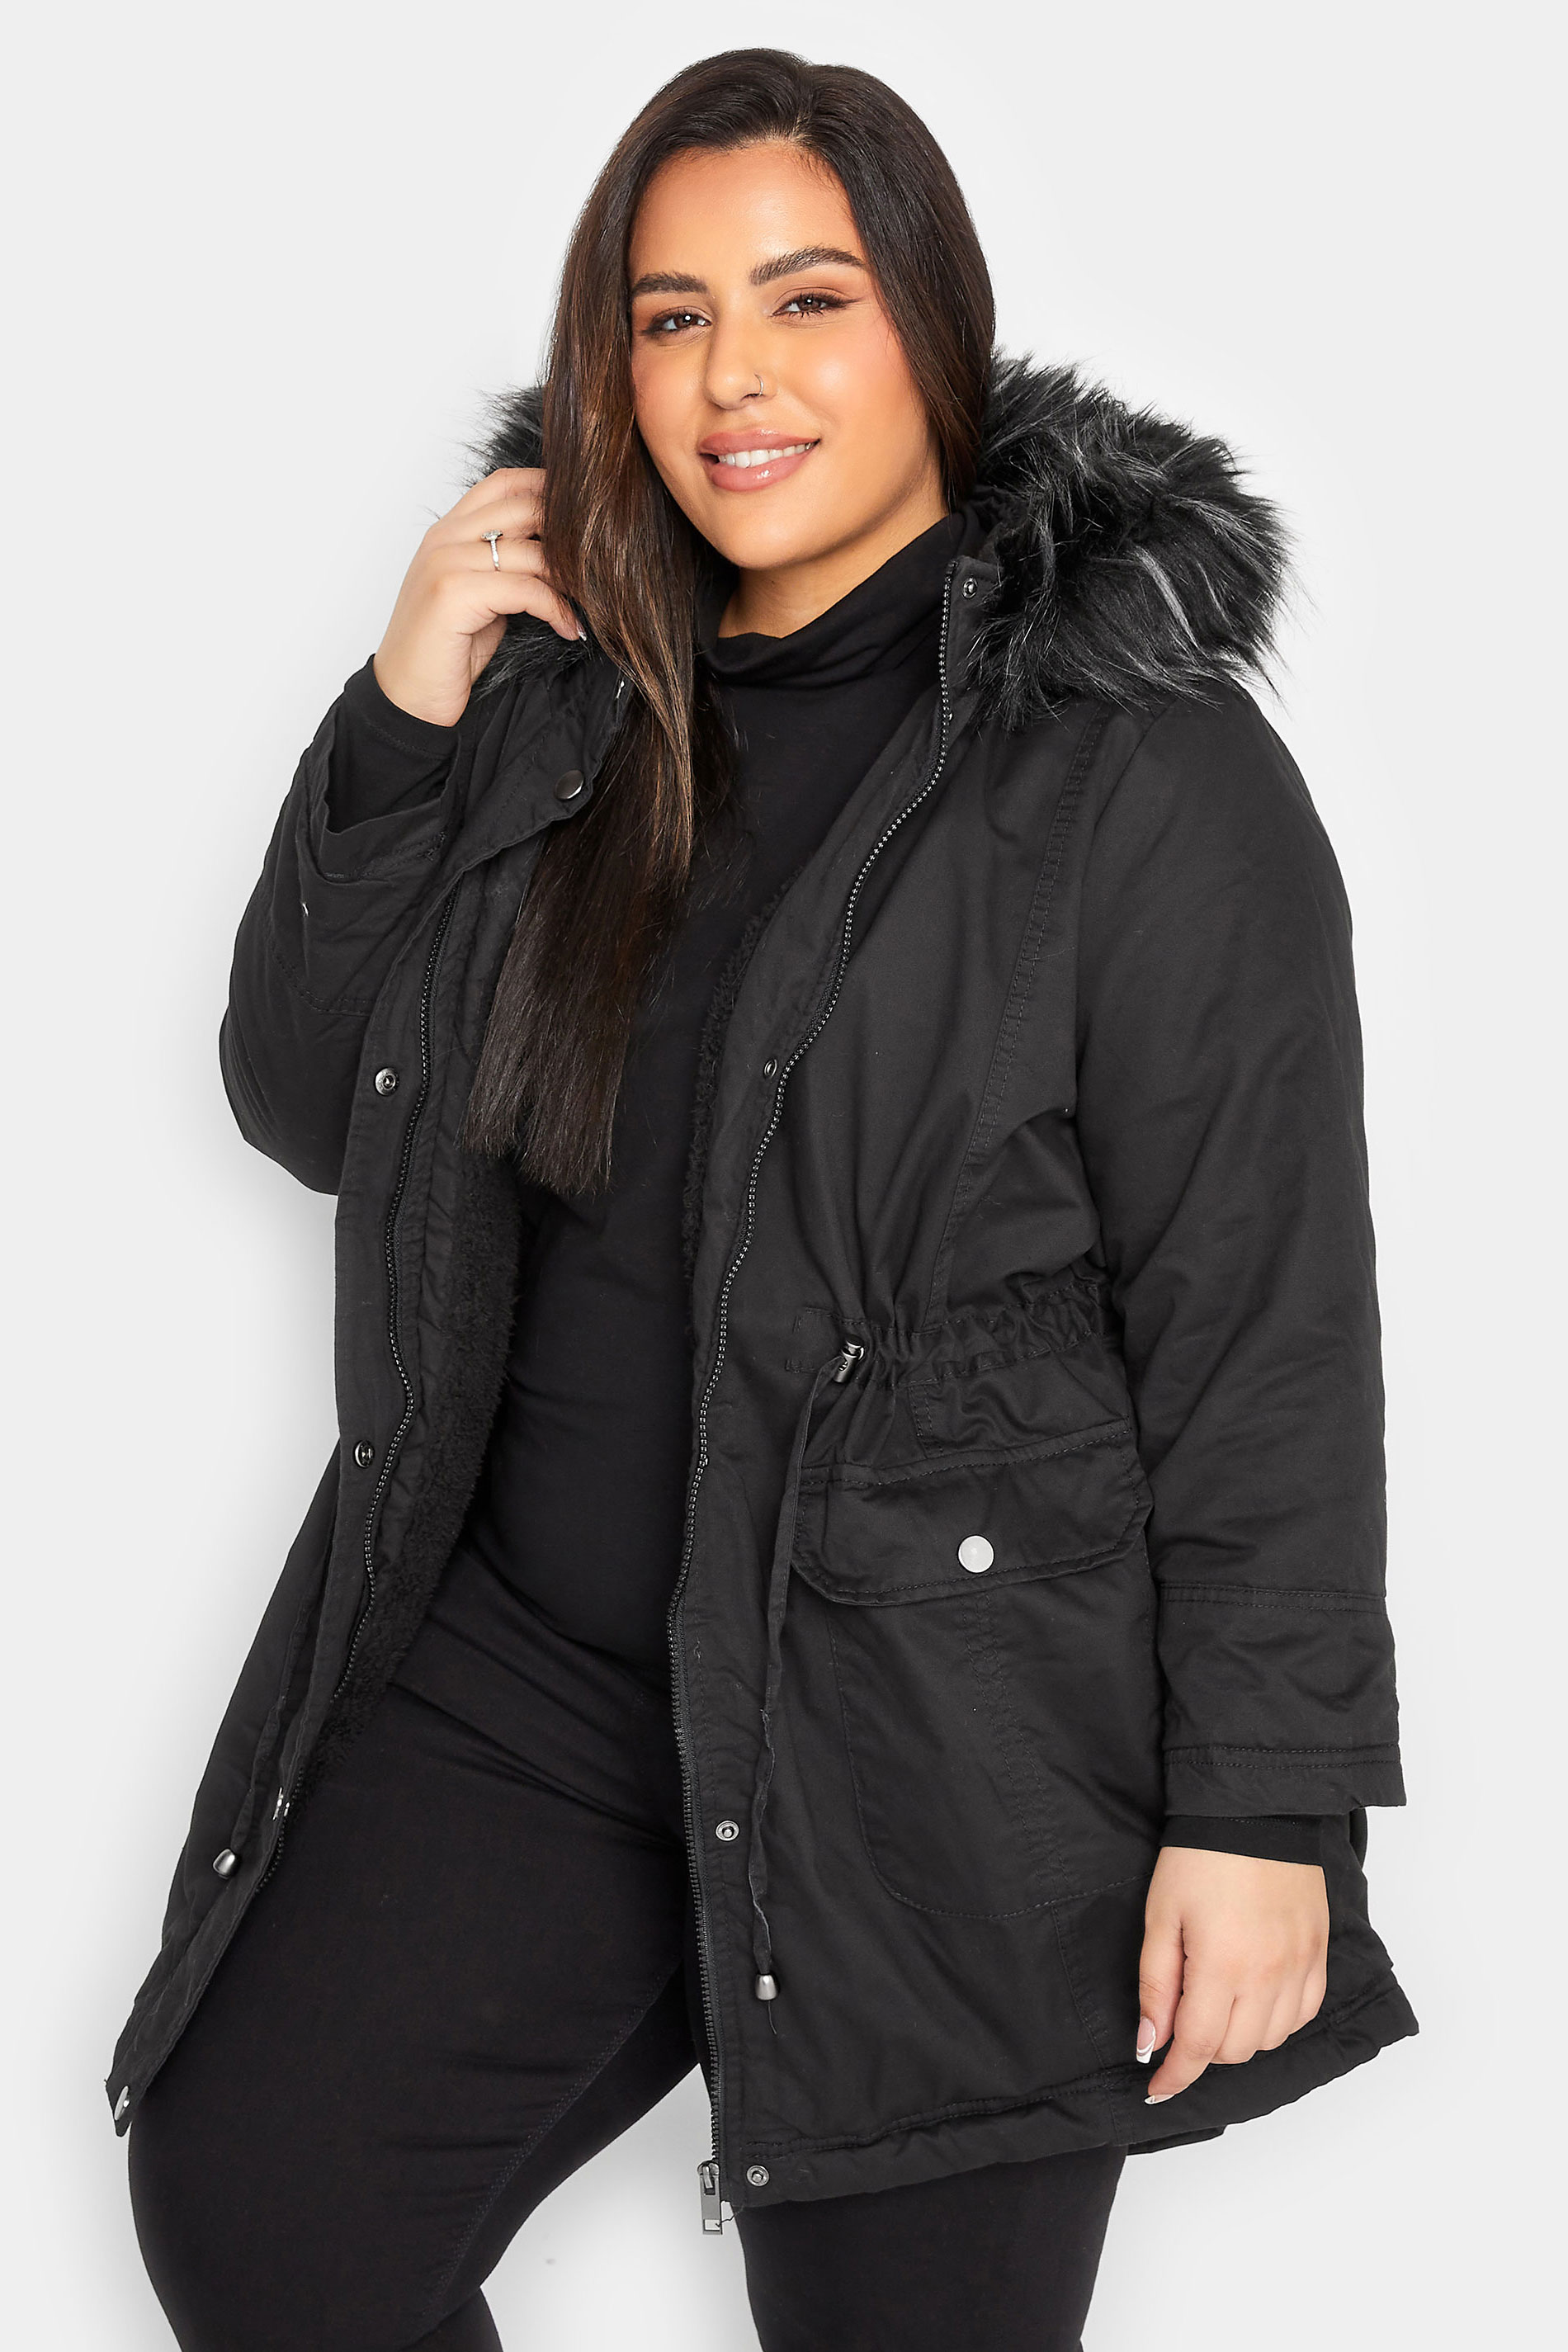 YOURS PETITE Plus Size Black Faux Fur Trim Hooded Parka Coat | Yours Clothing 1